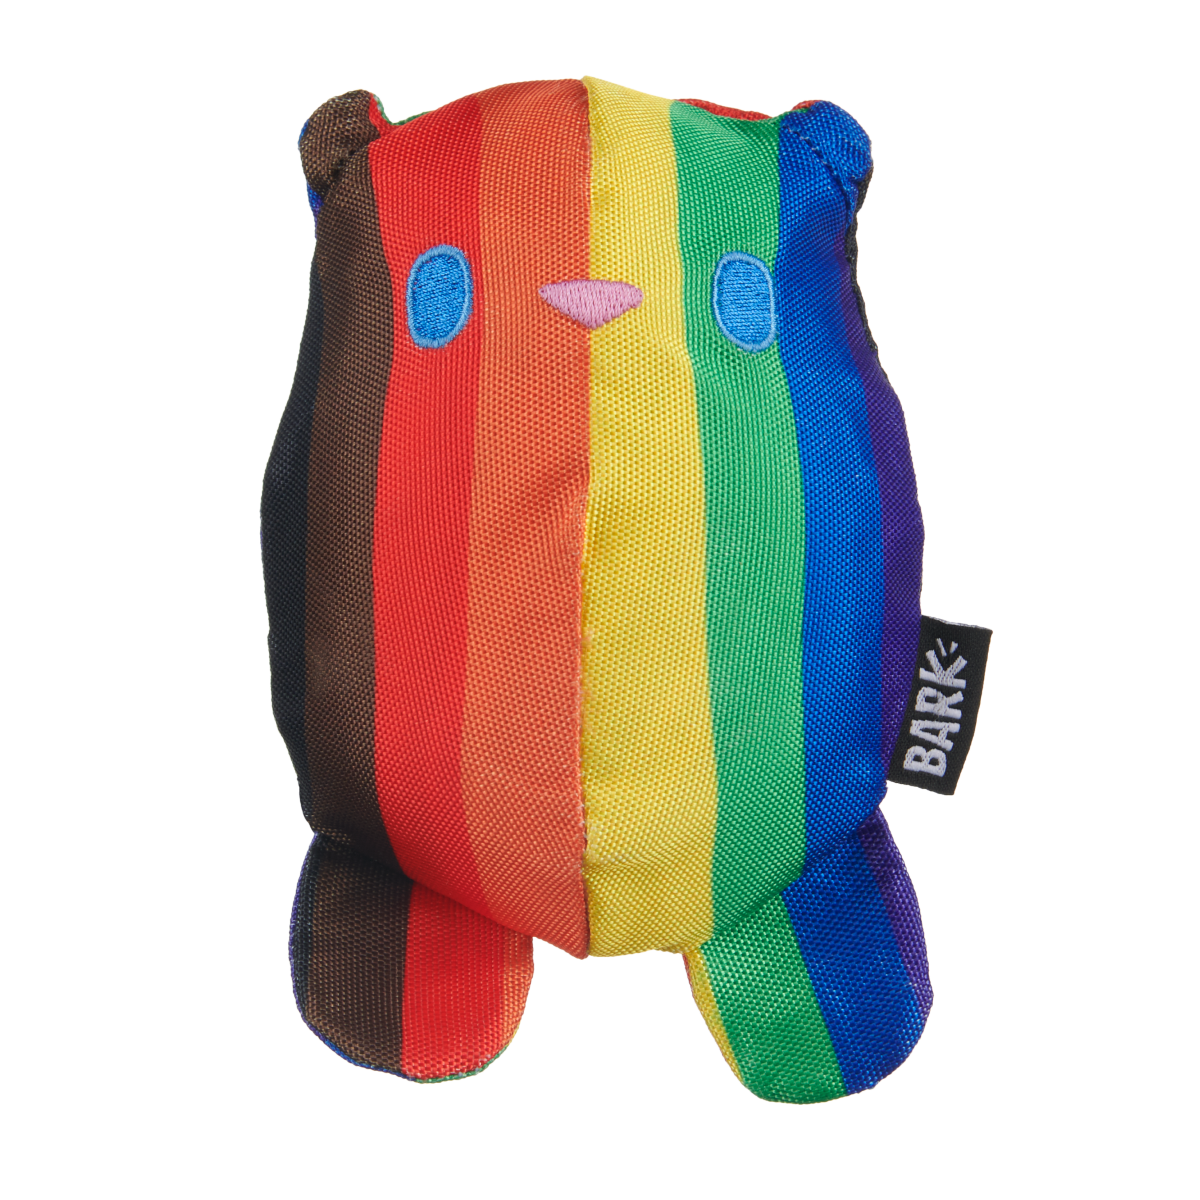 Some Bear Over The Rainbow